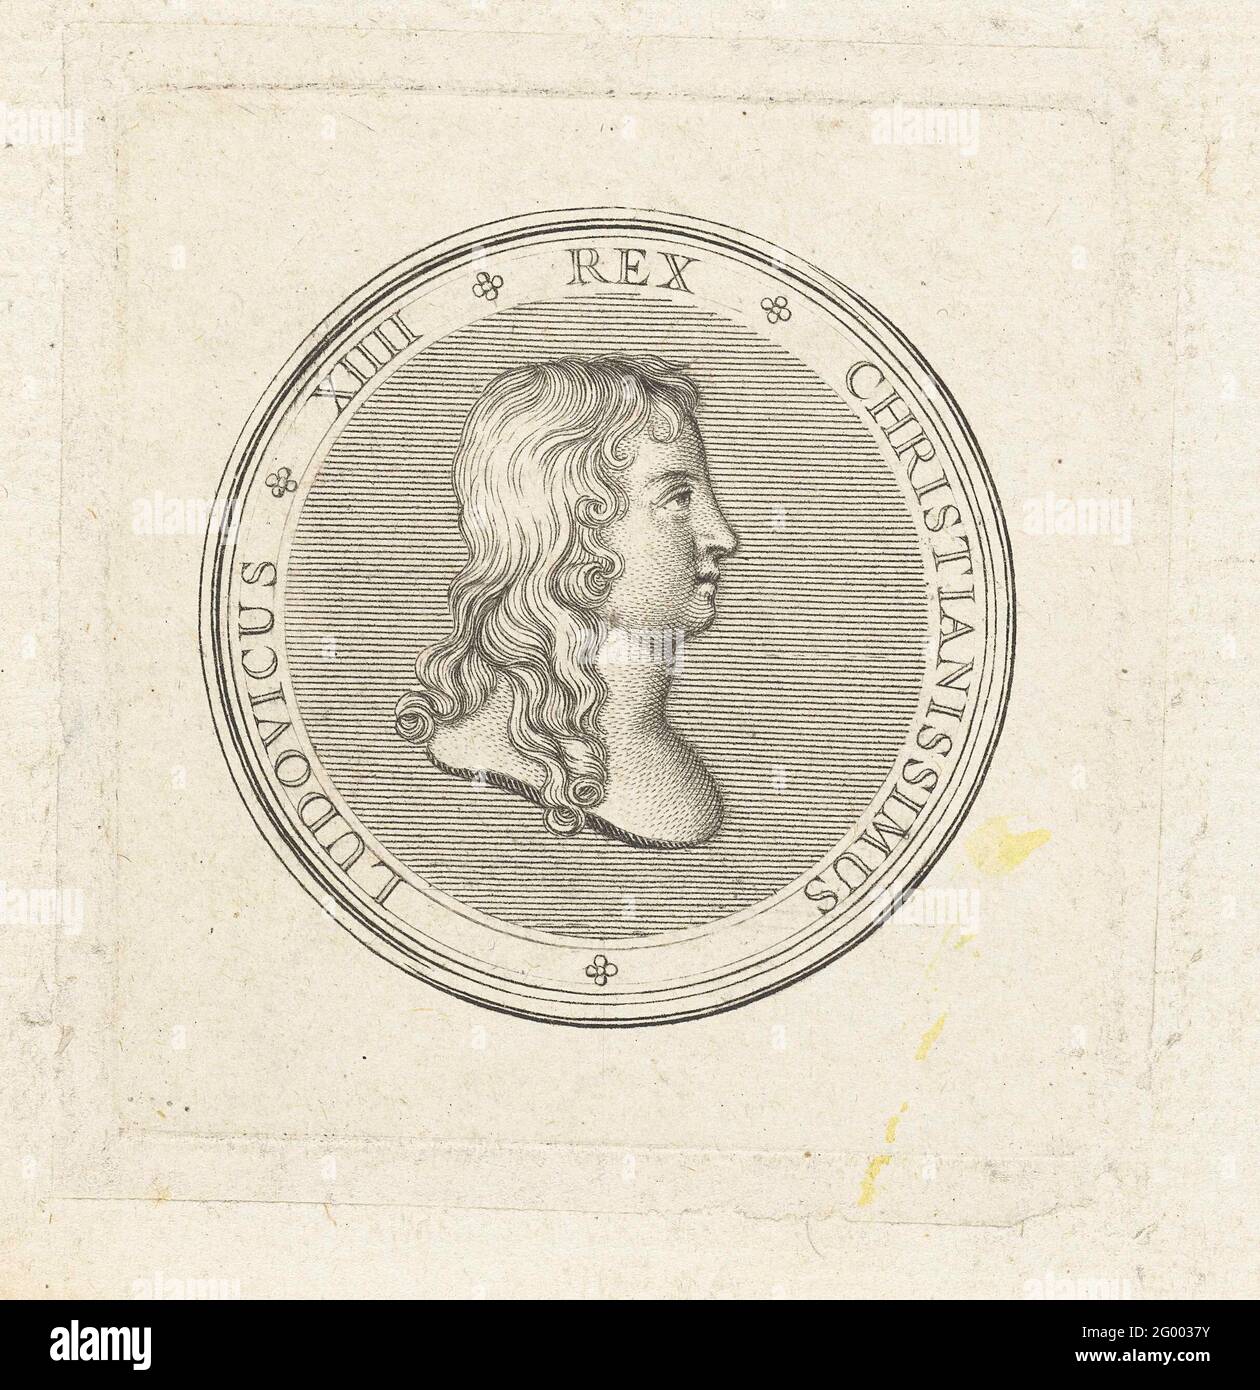 Medaille mit Büste von Lodewijk XIV. Vorderseite einer Medaille mit Büste und Profil von Ludwig XIV., die erstmals nach der Schlacht von Rocroi im Jahr 1643 herausgegeben wurde. Stockfoto